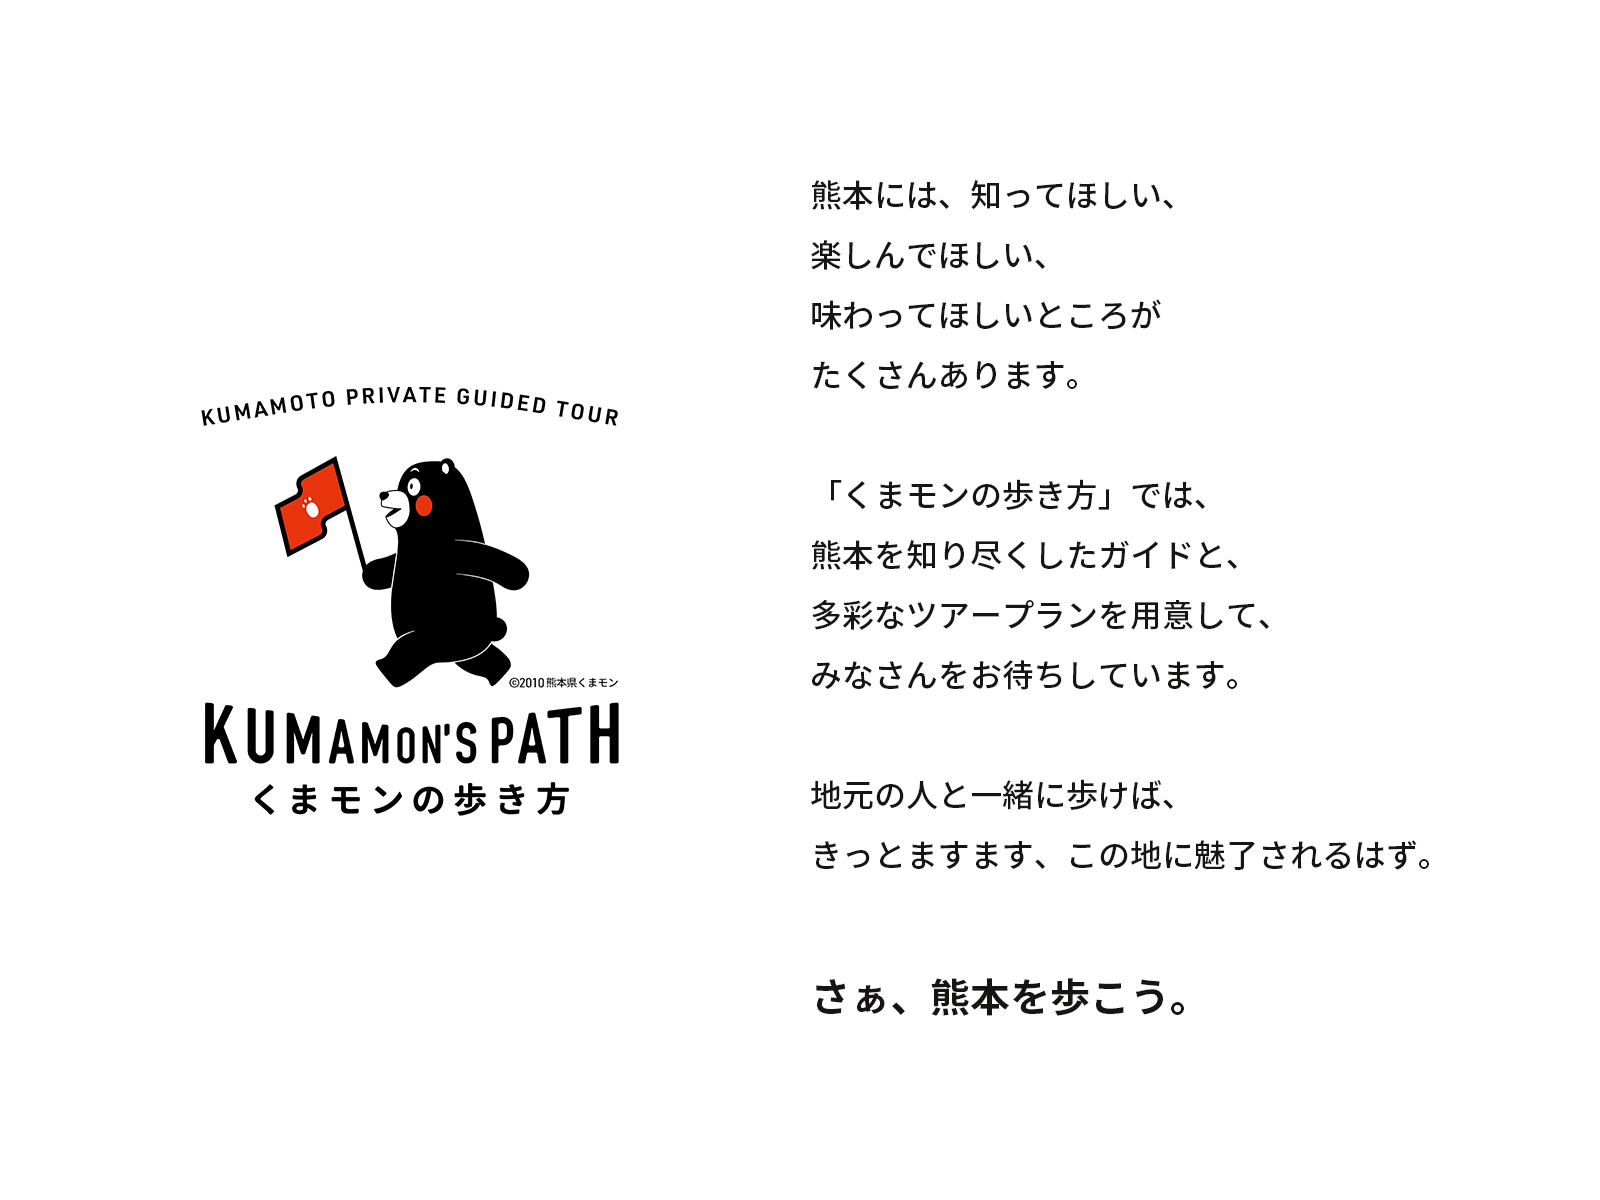 くまモンの歩き方のブランドメッセージ